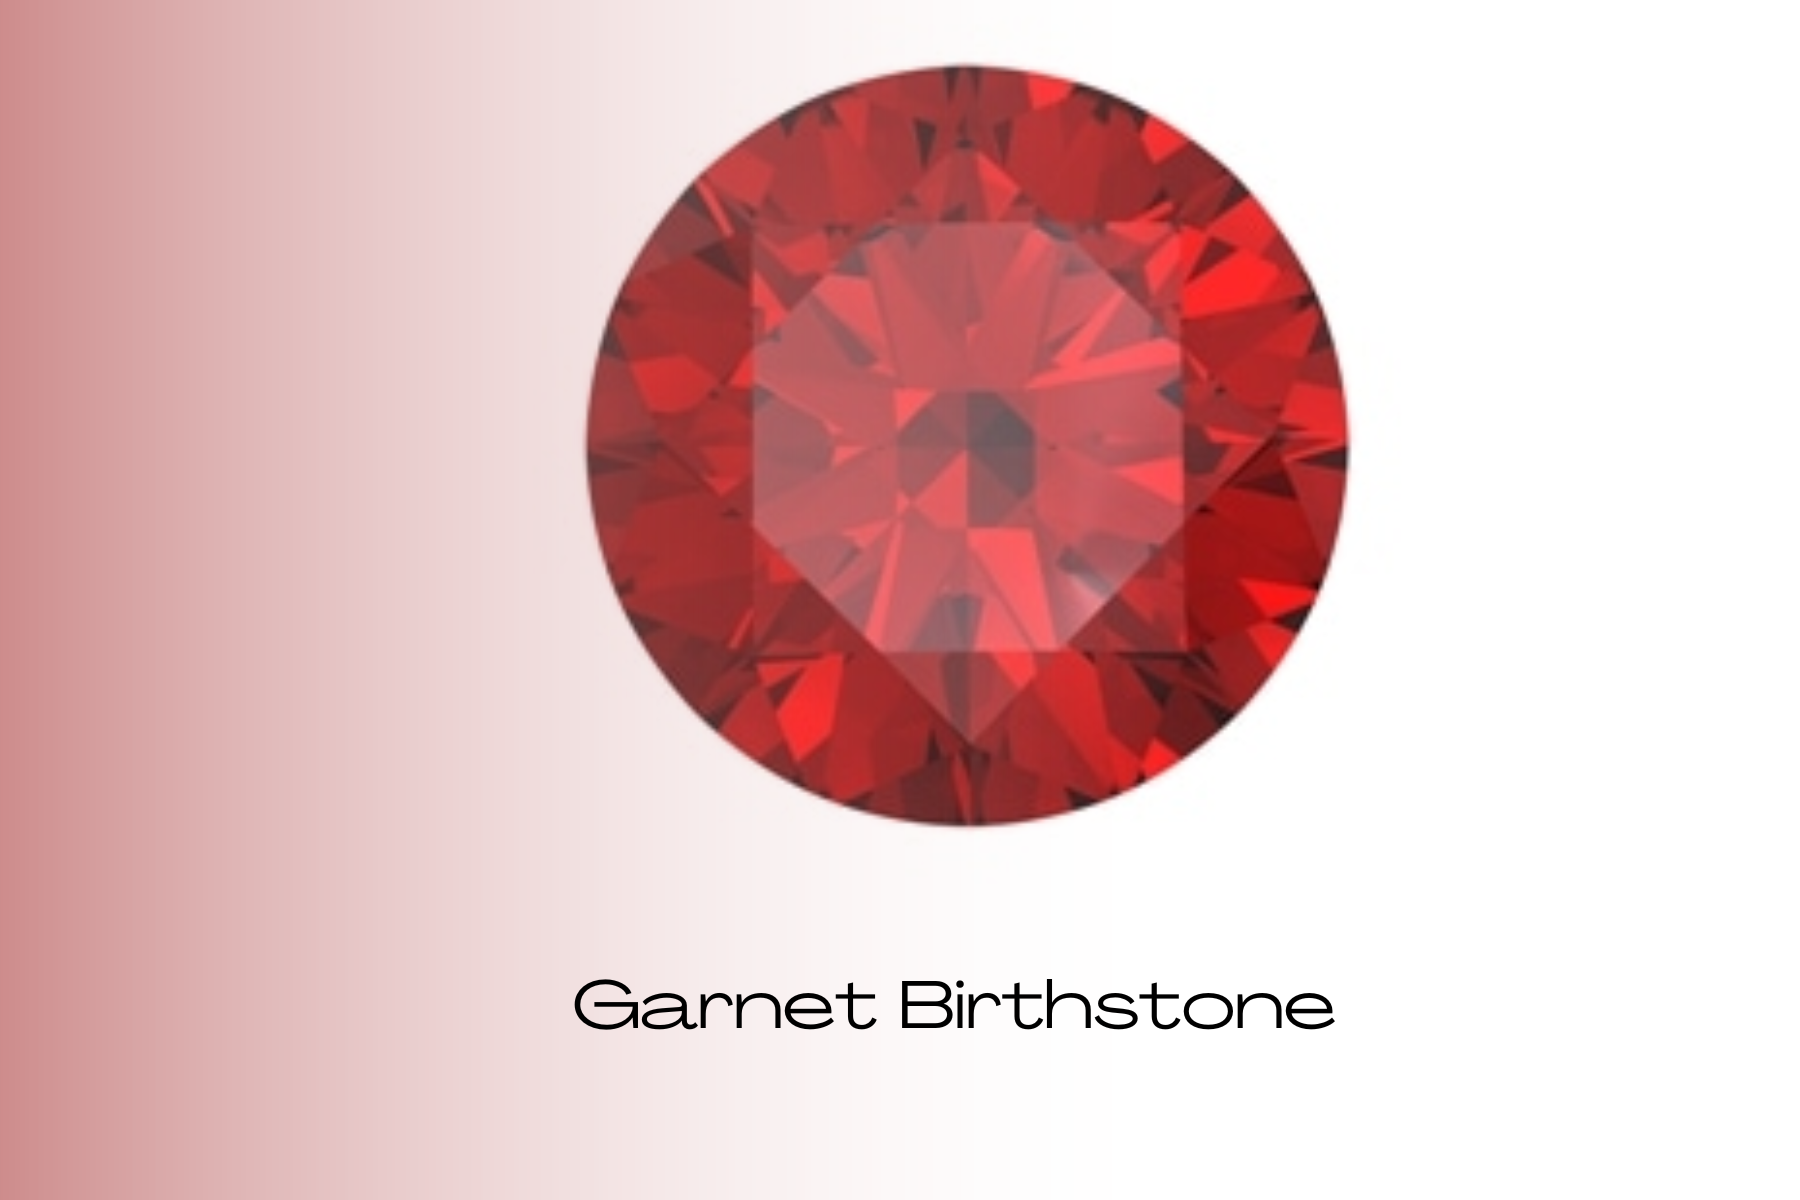 Round red garnet stone